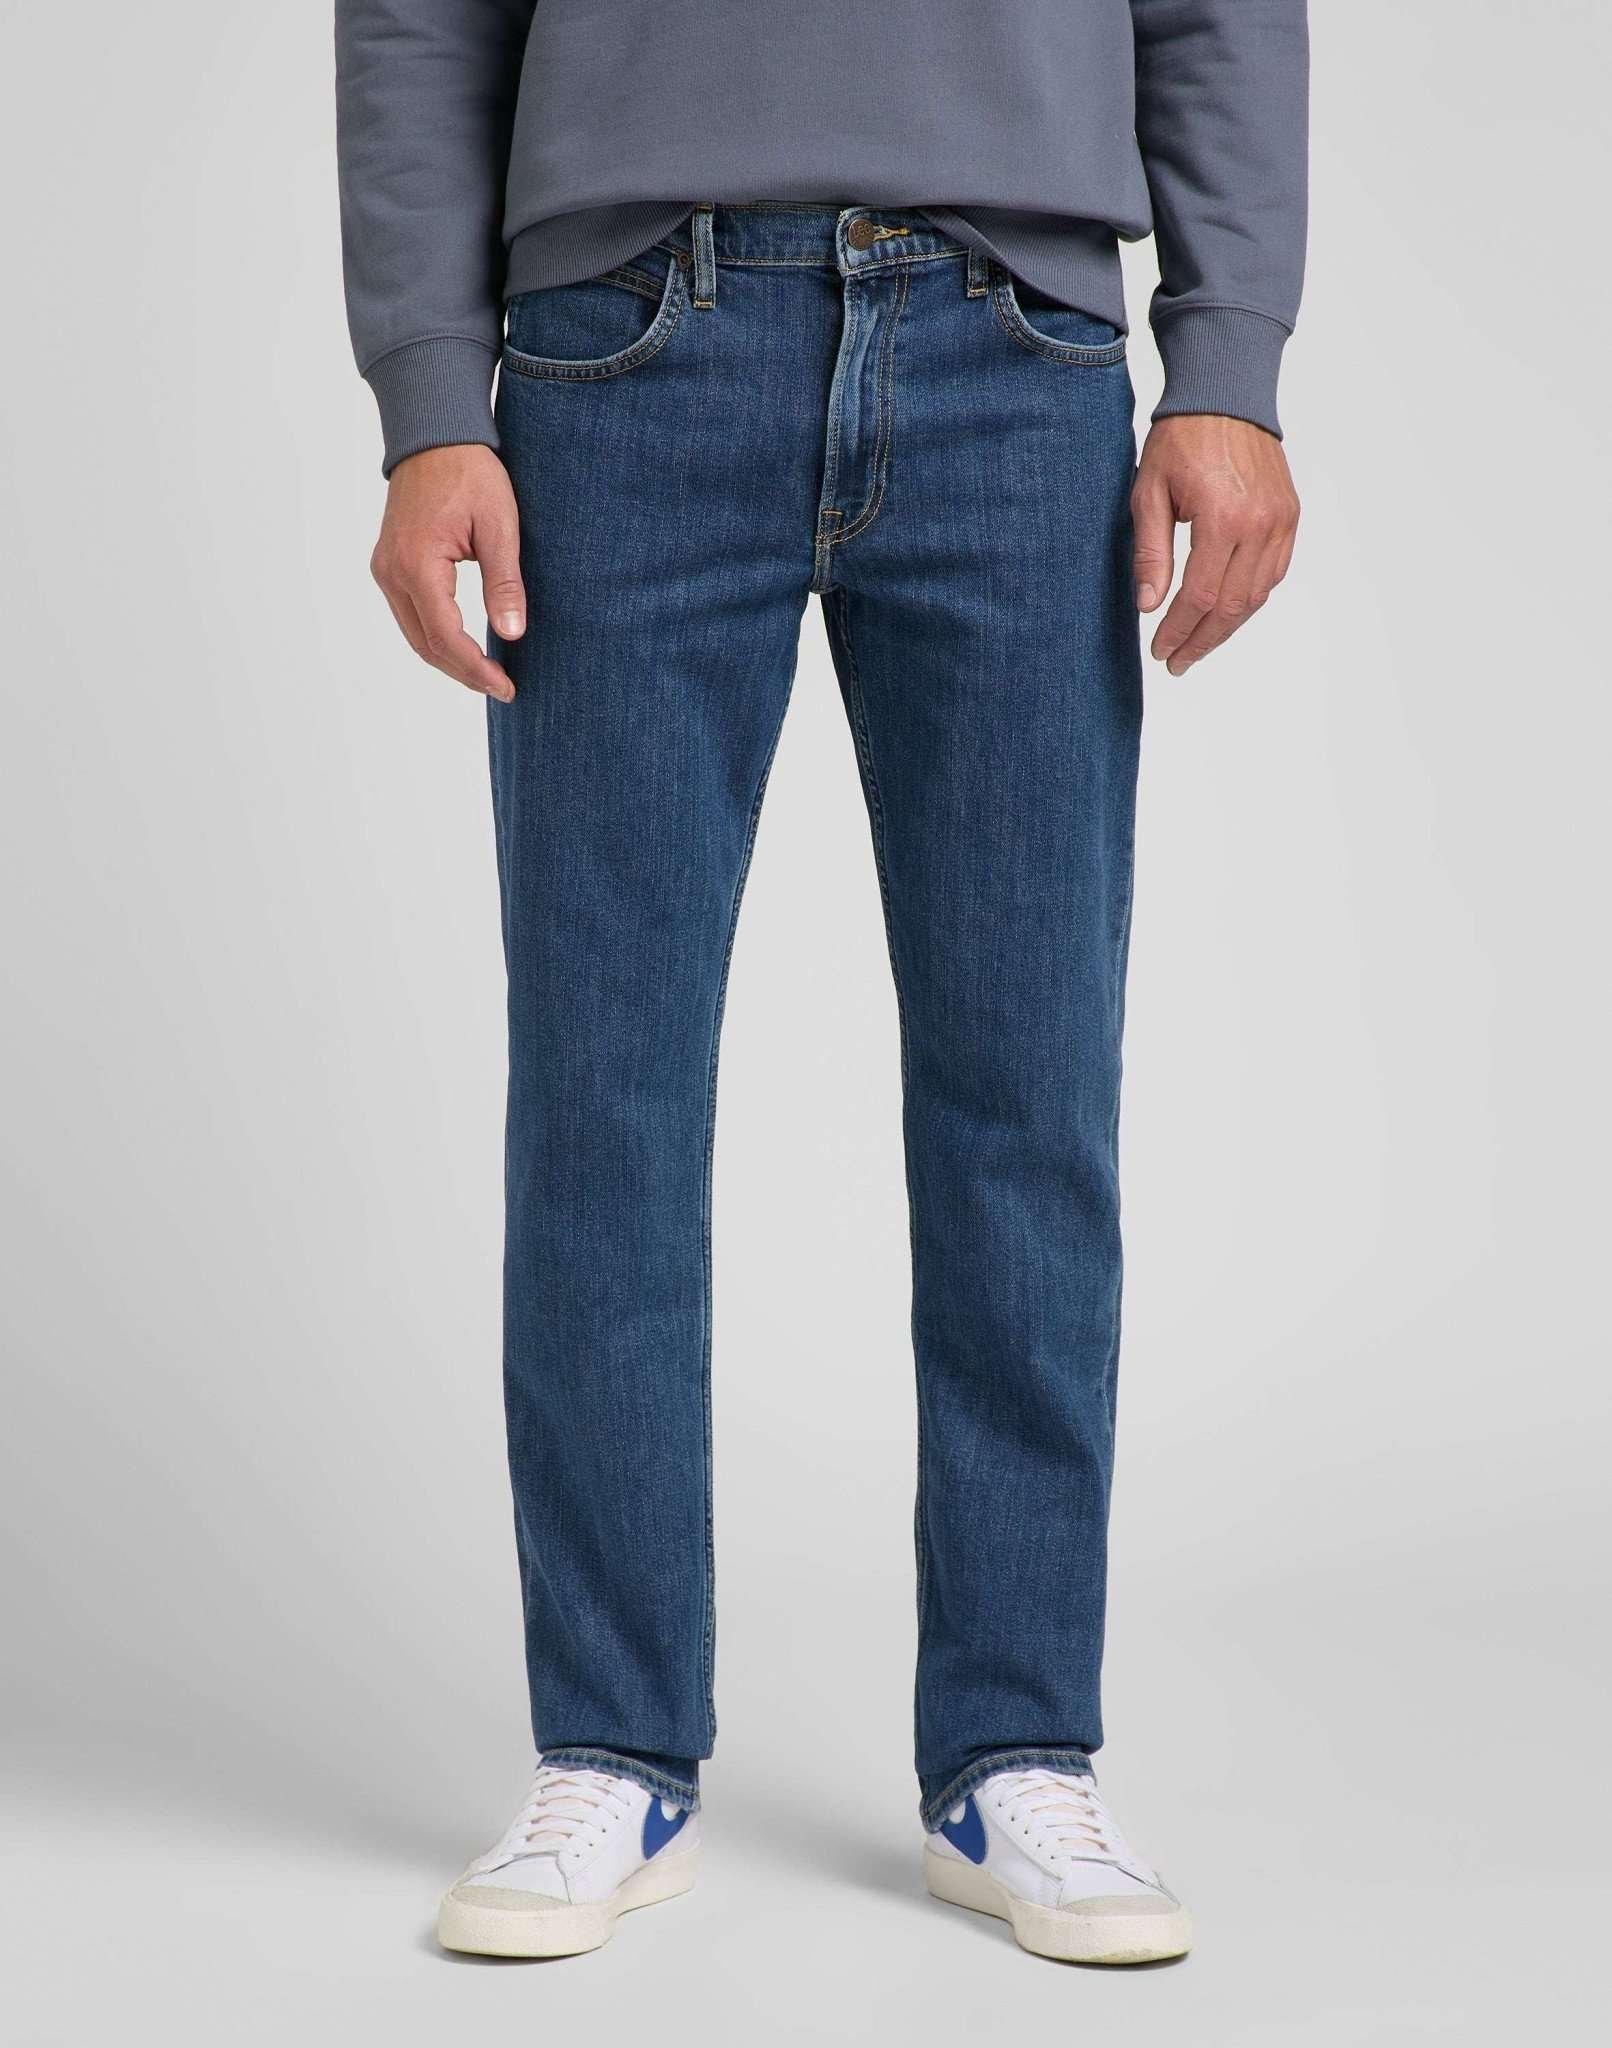 Jeans Straight Leg Brooklyn Herren Blau Denim L34/W44 von Lee